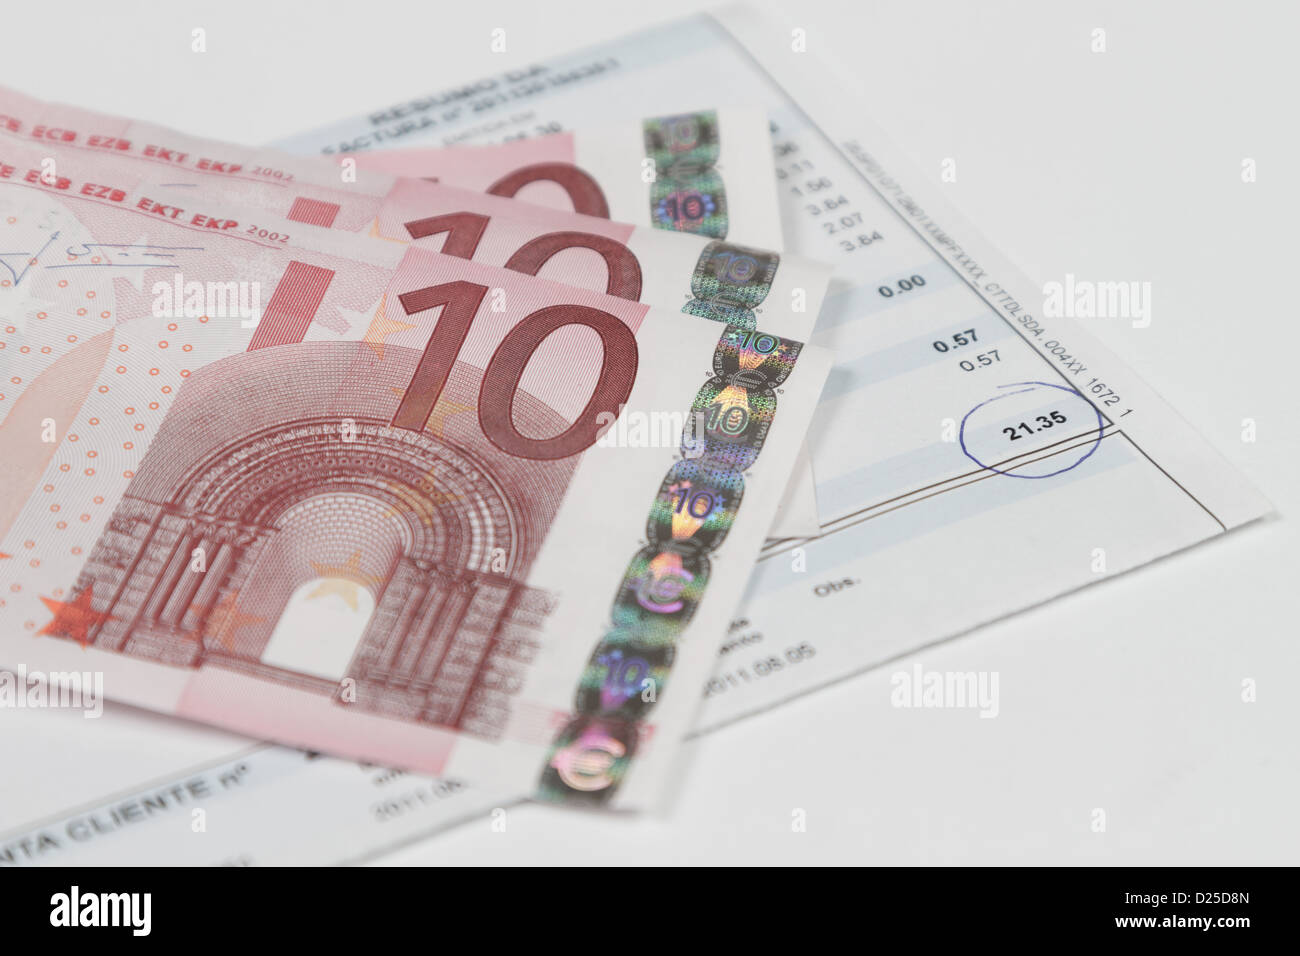 Factures à payer avec des billets en euros sur elle Banque D'Images